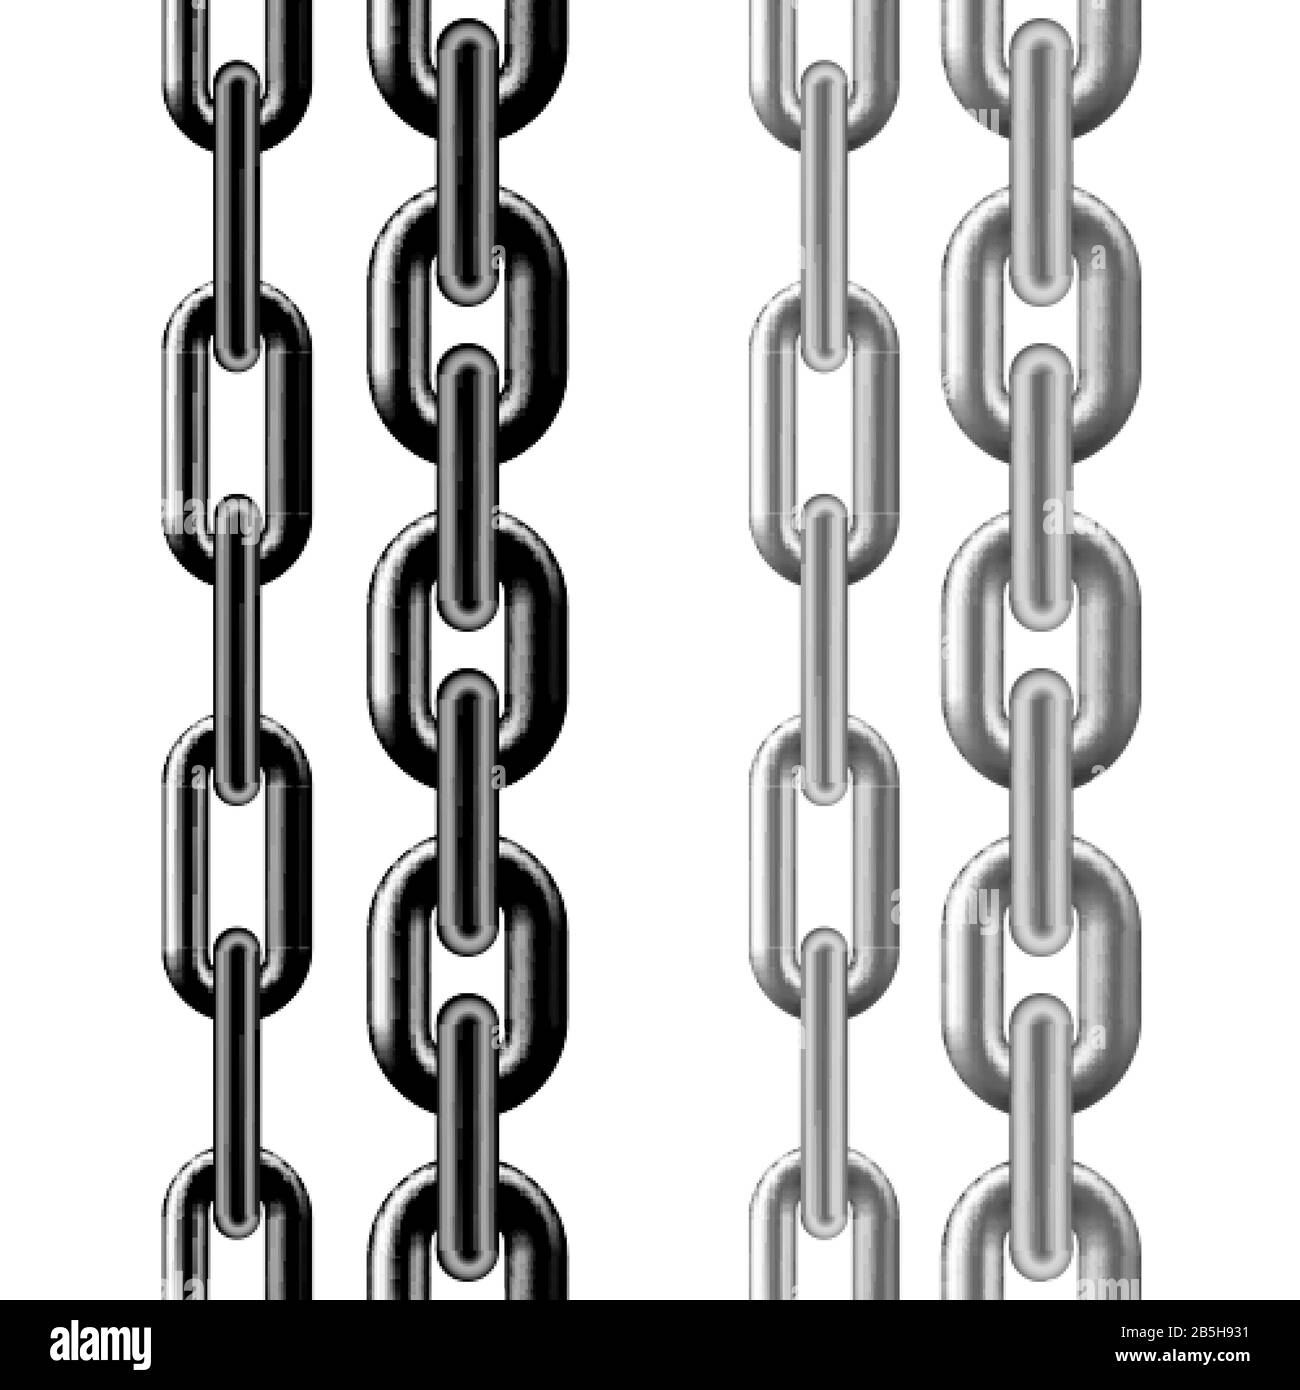 Modello di catena senza giunzioni. Struttura a catena metallica nera e argento. Illustrazione vettoriale isolata su sfondo bianco Illustrazione Vettoriale